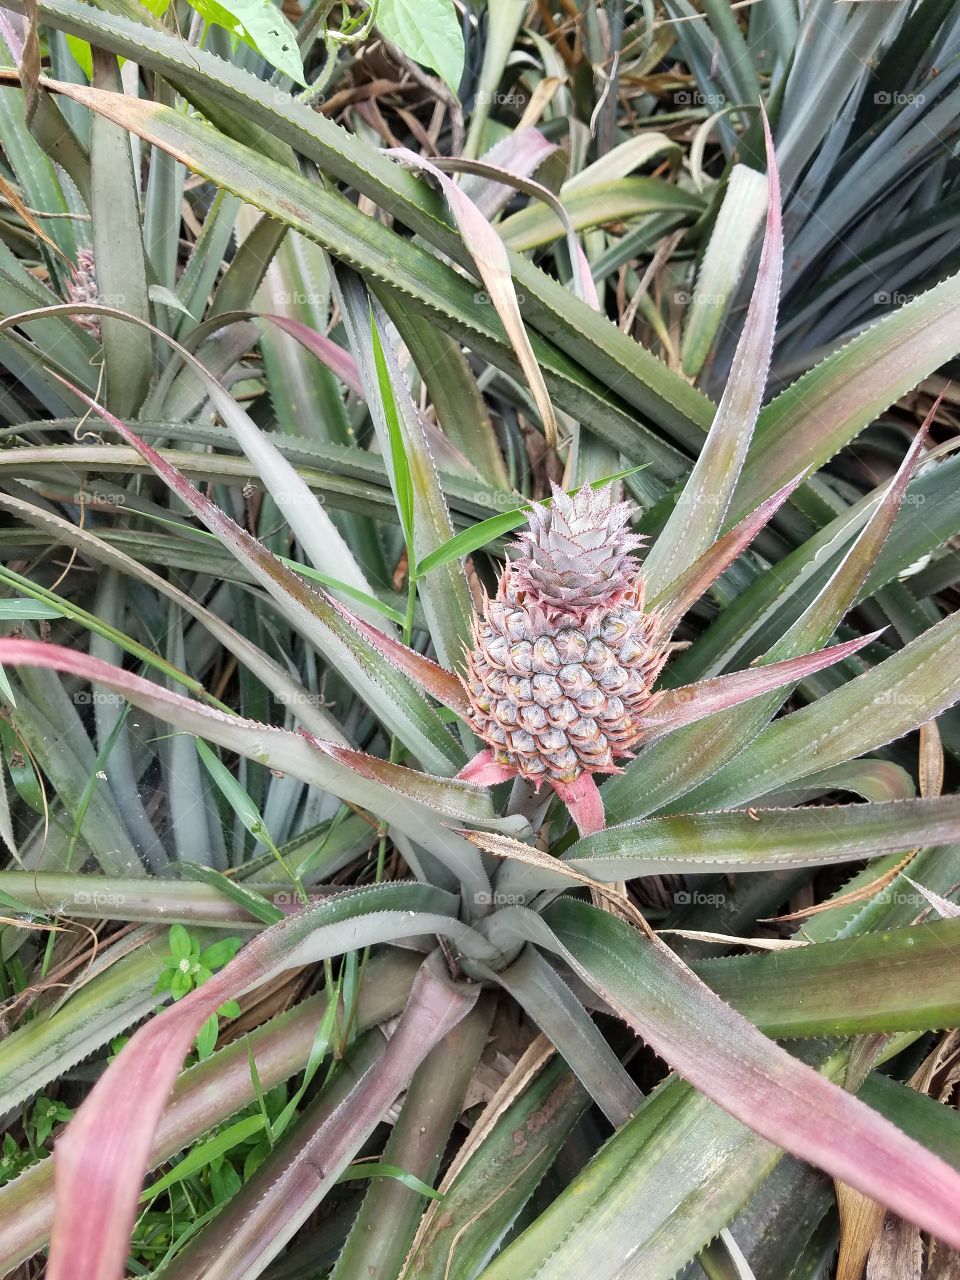 pineapple in progress